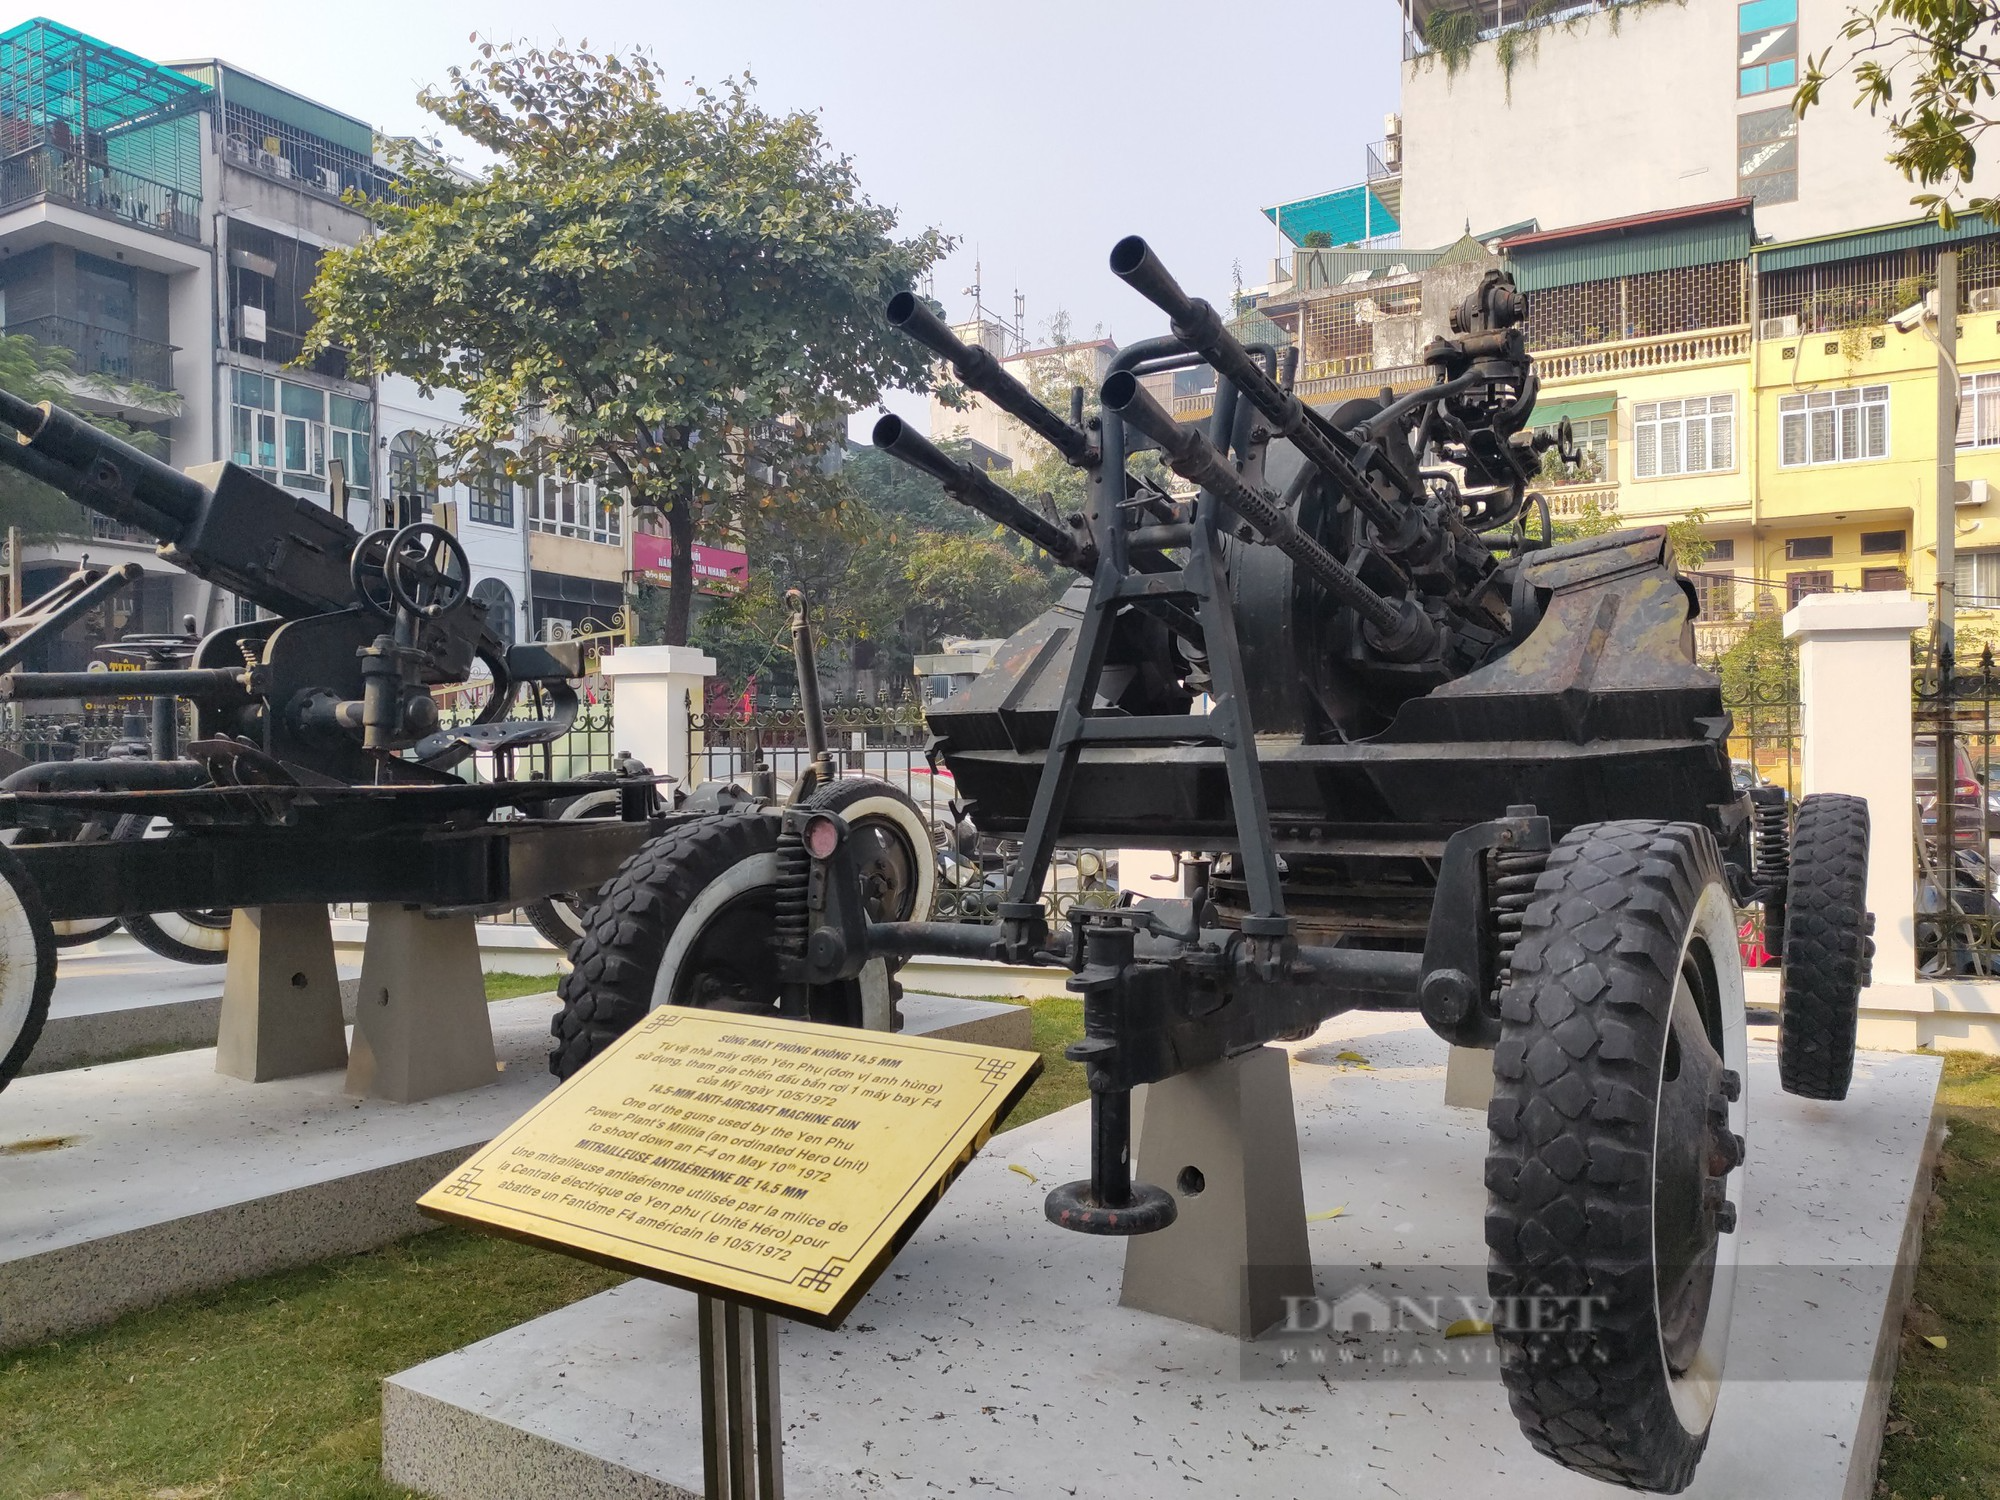 Cận cảnh dàn pháo cao xạ, súng máy bảo vệ Hà Nội năm 1972 - Ảnh 8.